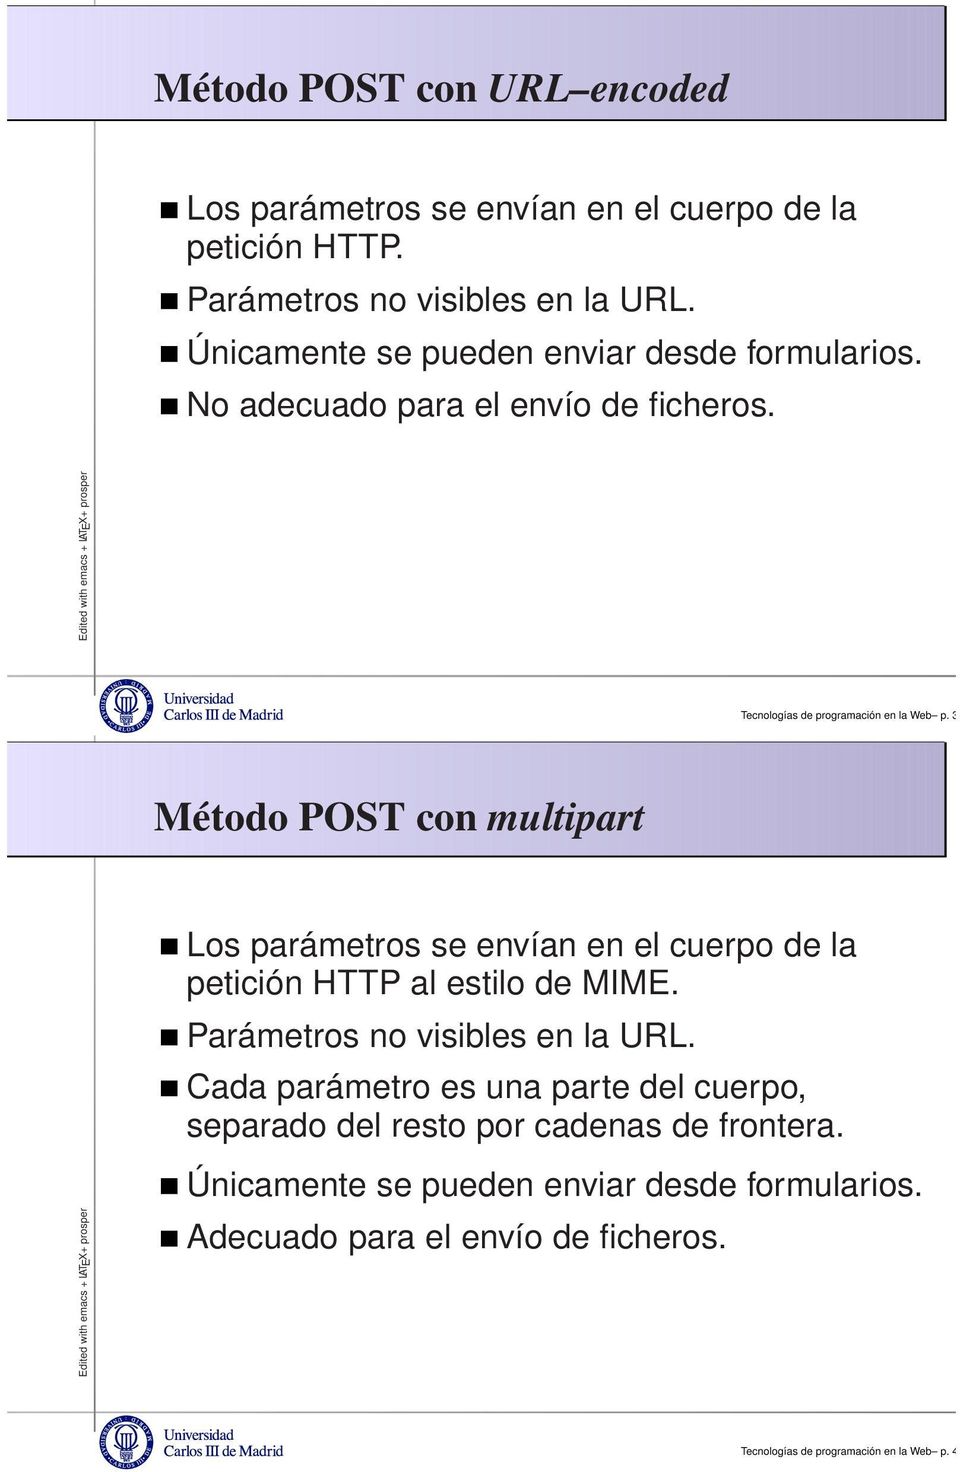 39 Método POST con multipart Los parámetros se envían en el cuerpo de la petición HTTP al estilo de MIME. Parámetros no visibles en la URL.